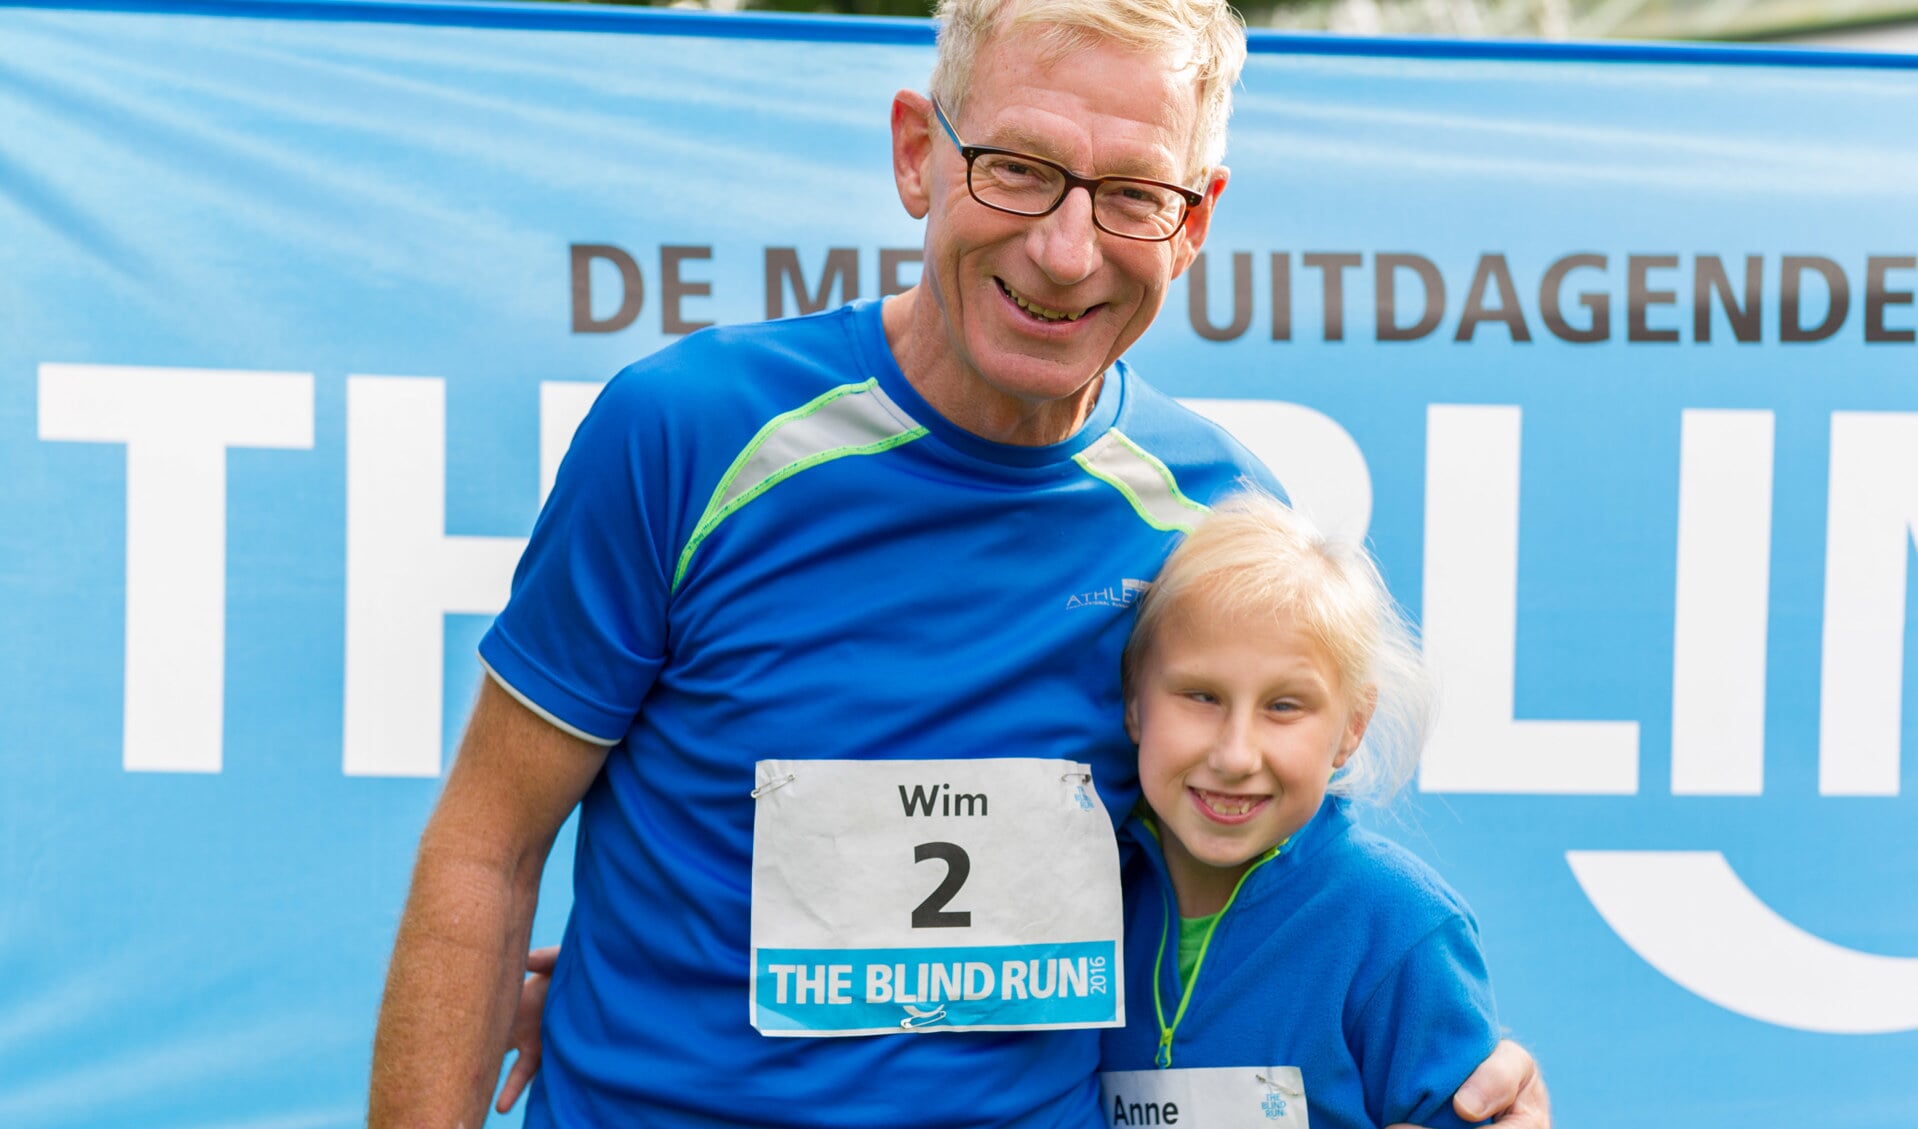 'The Blind Run' is een unieke en uitdagende sponsorloop om zoveel mogelijk geld op te halen voor blinde- en slechtziende kinderen. 